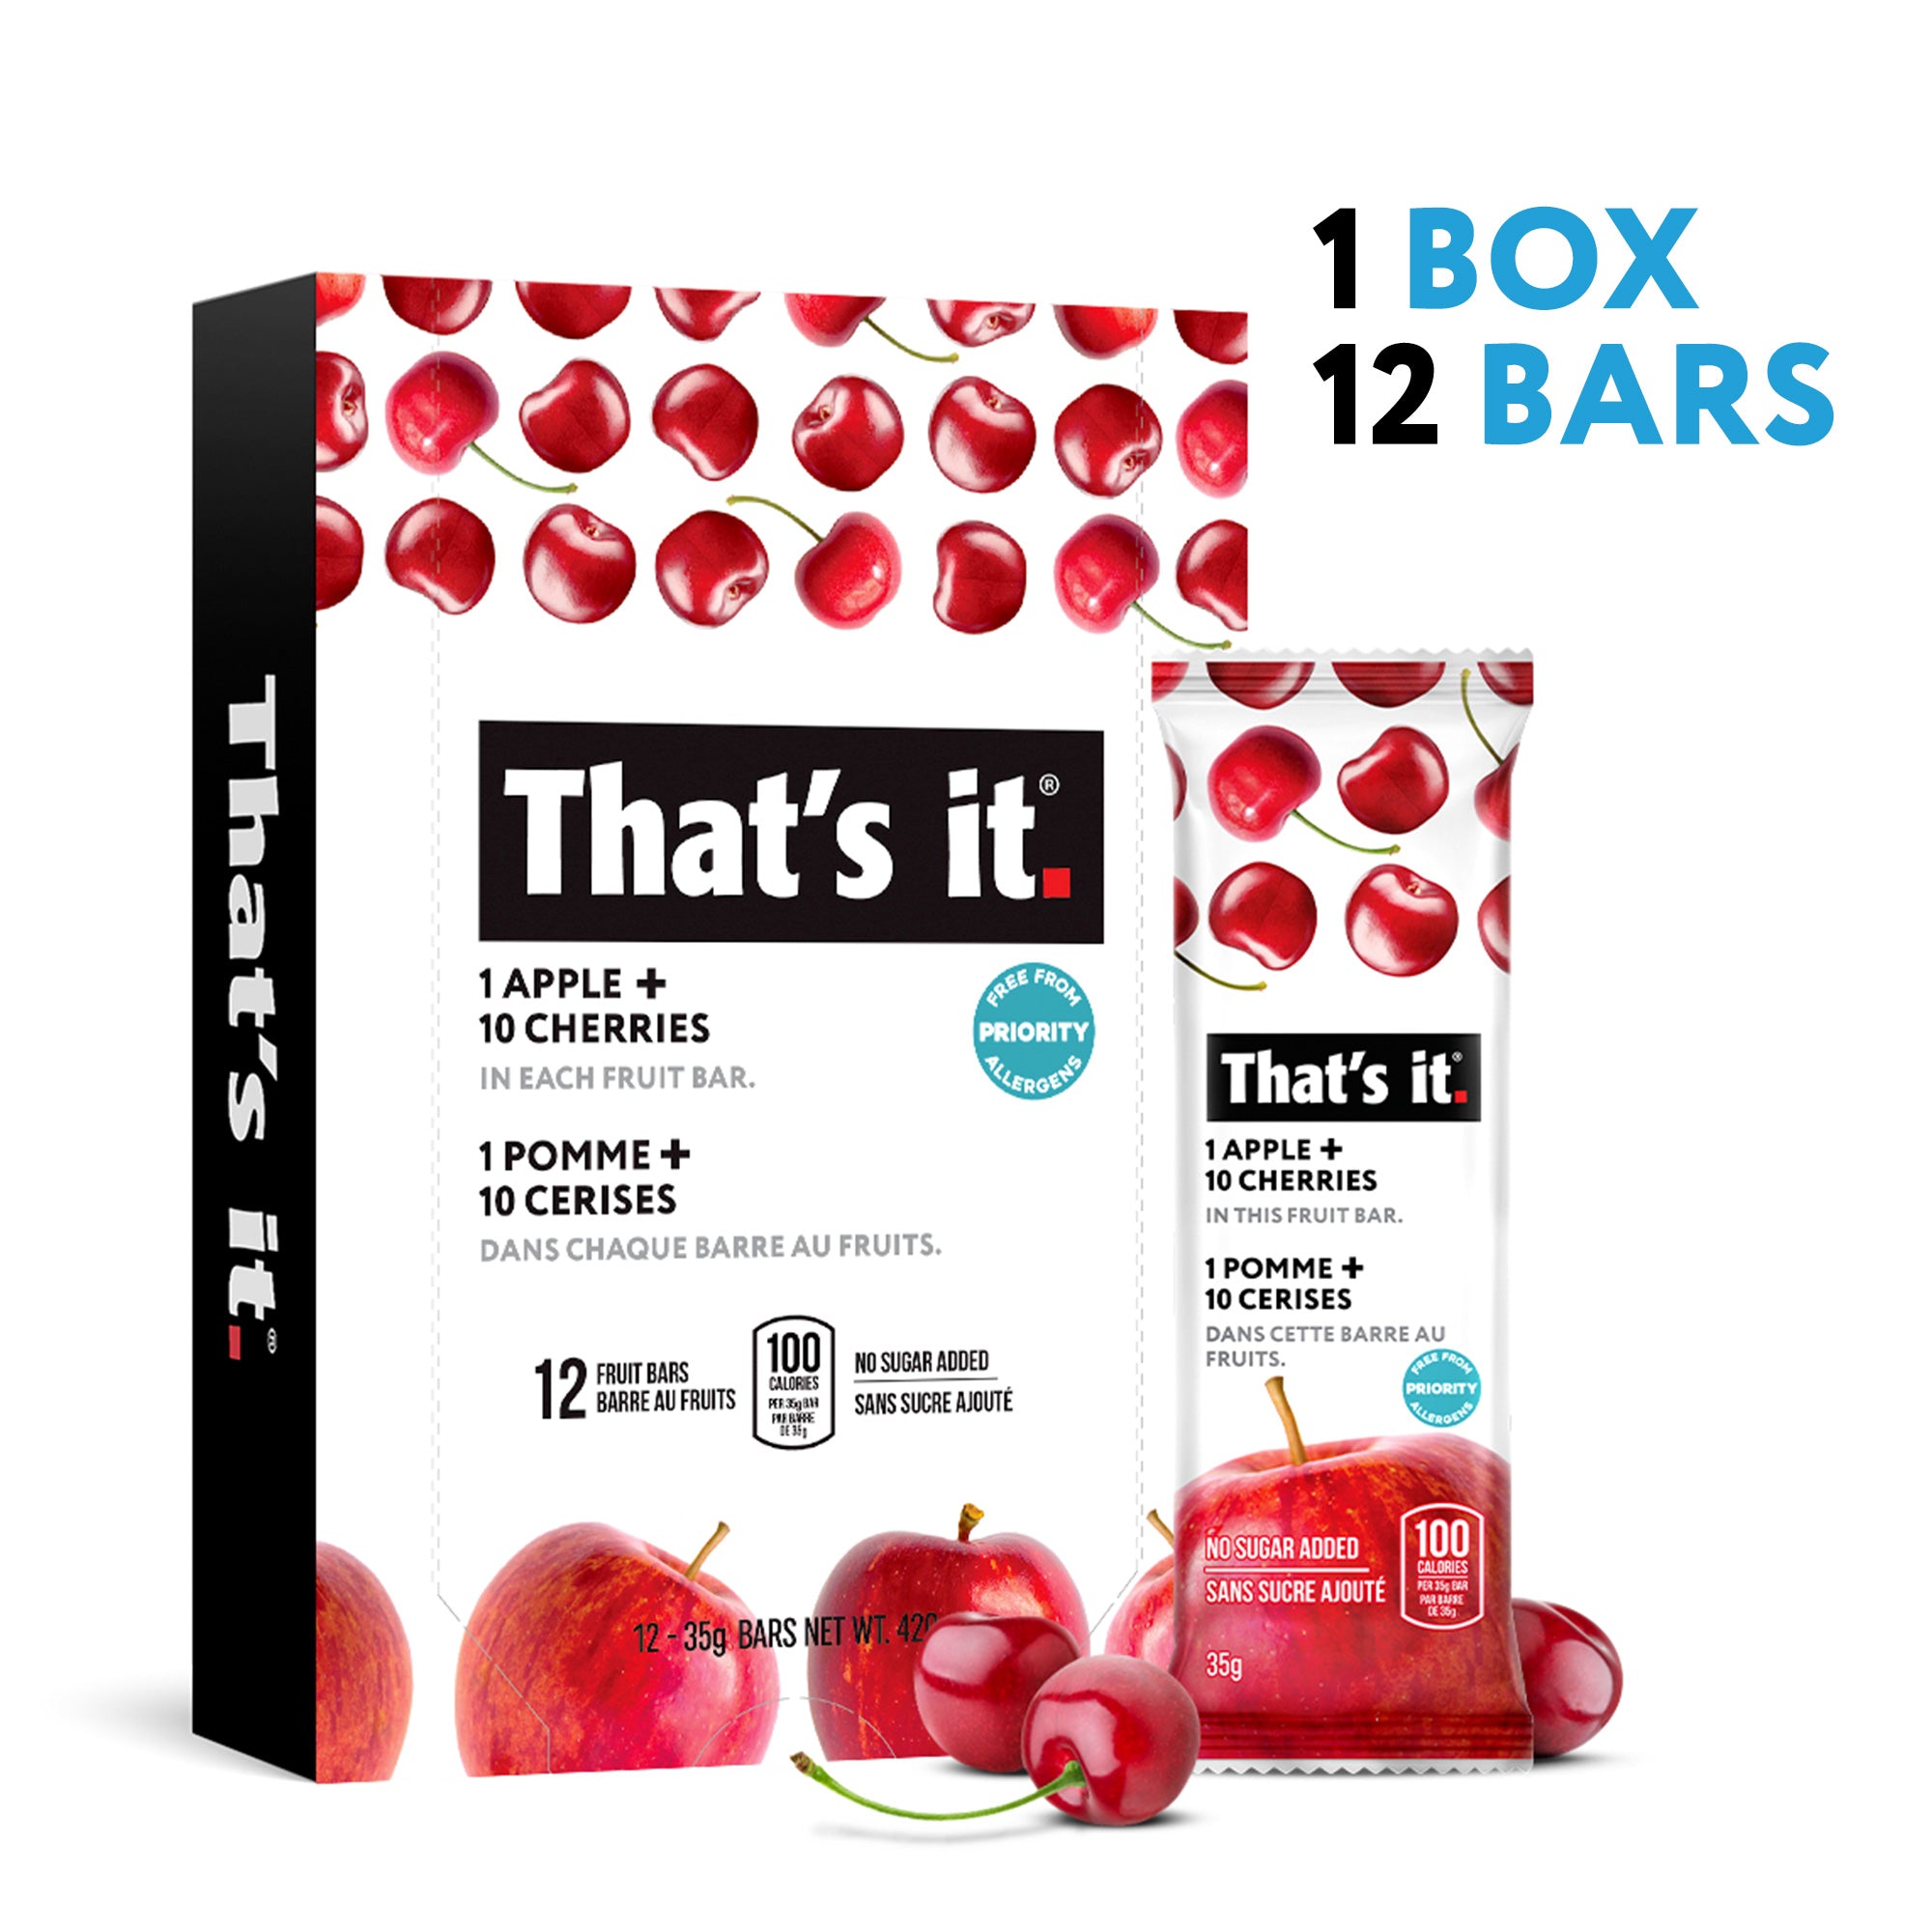 1 box 12 bars. 12 ct Box of Cherry fruit bars